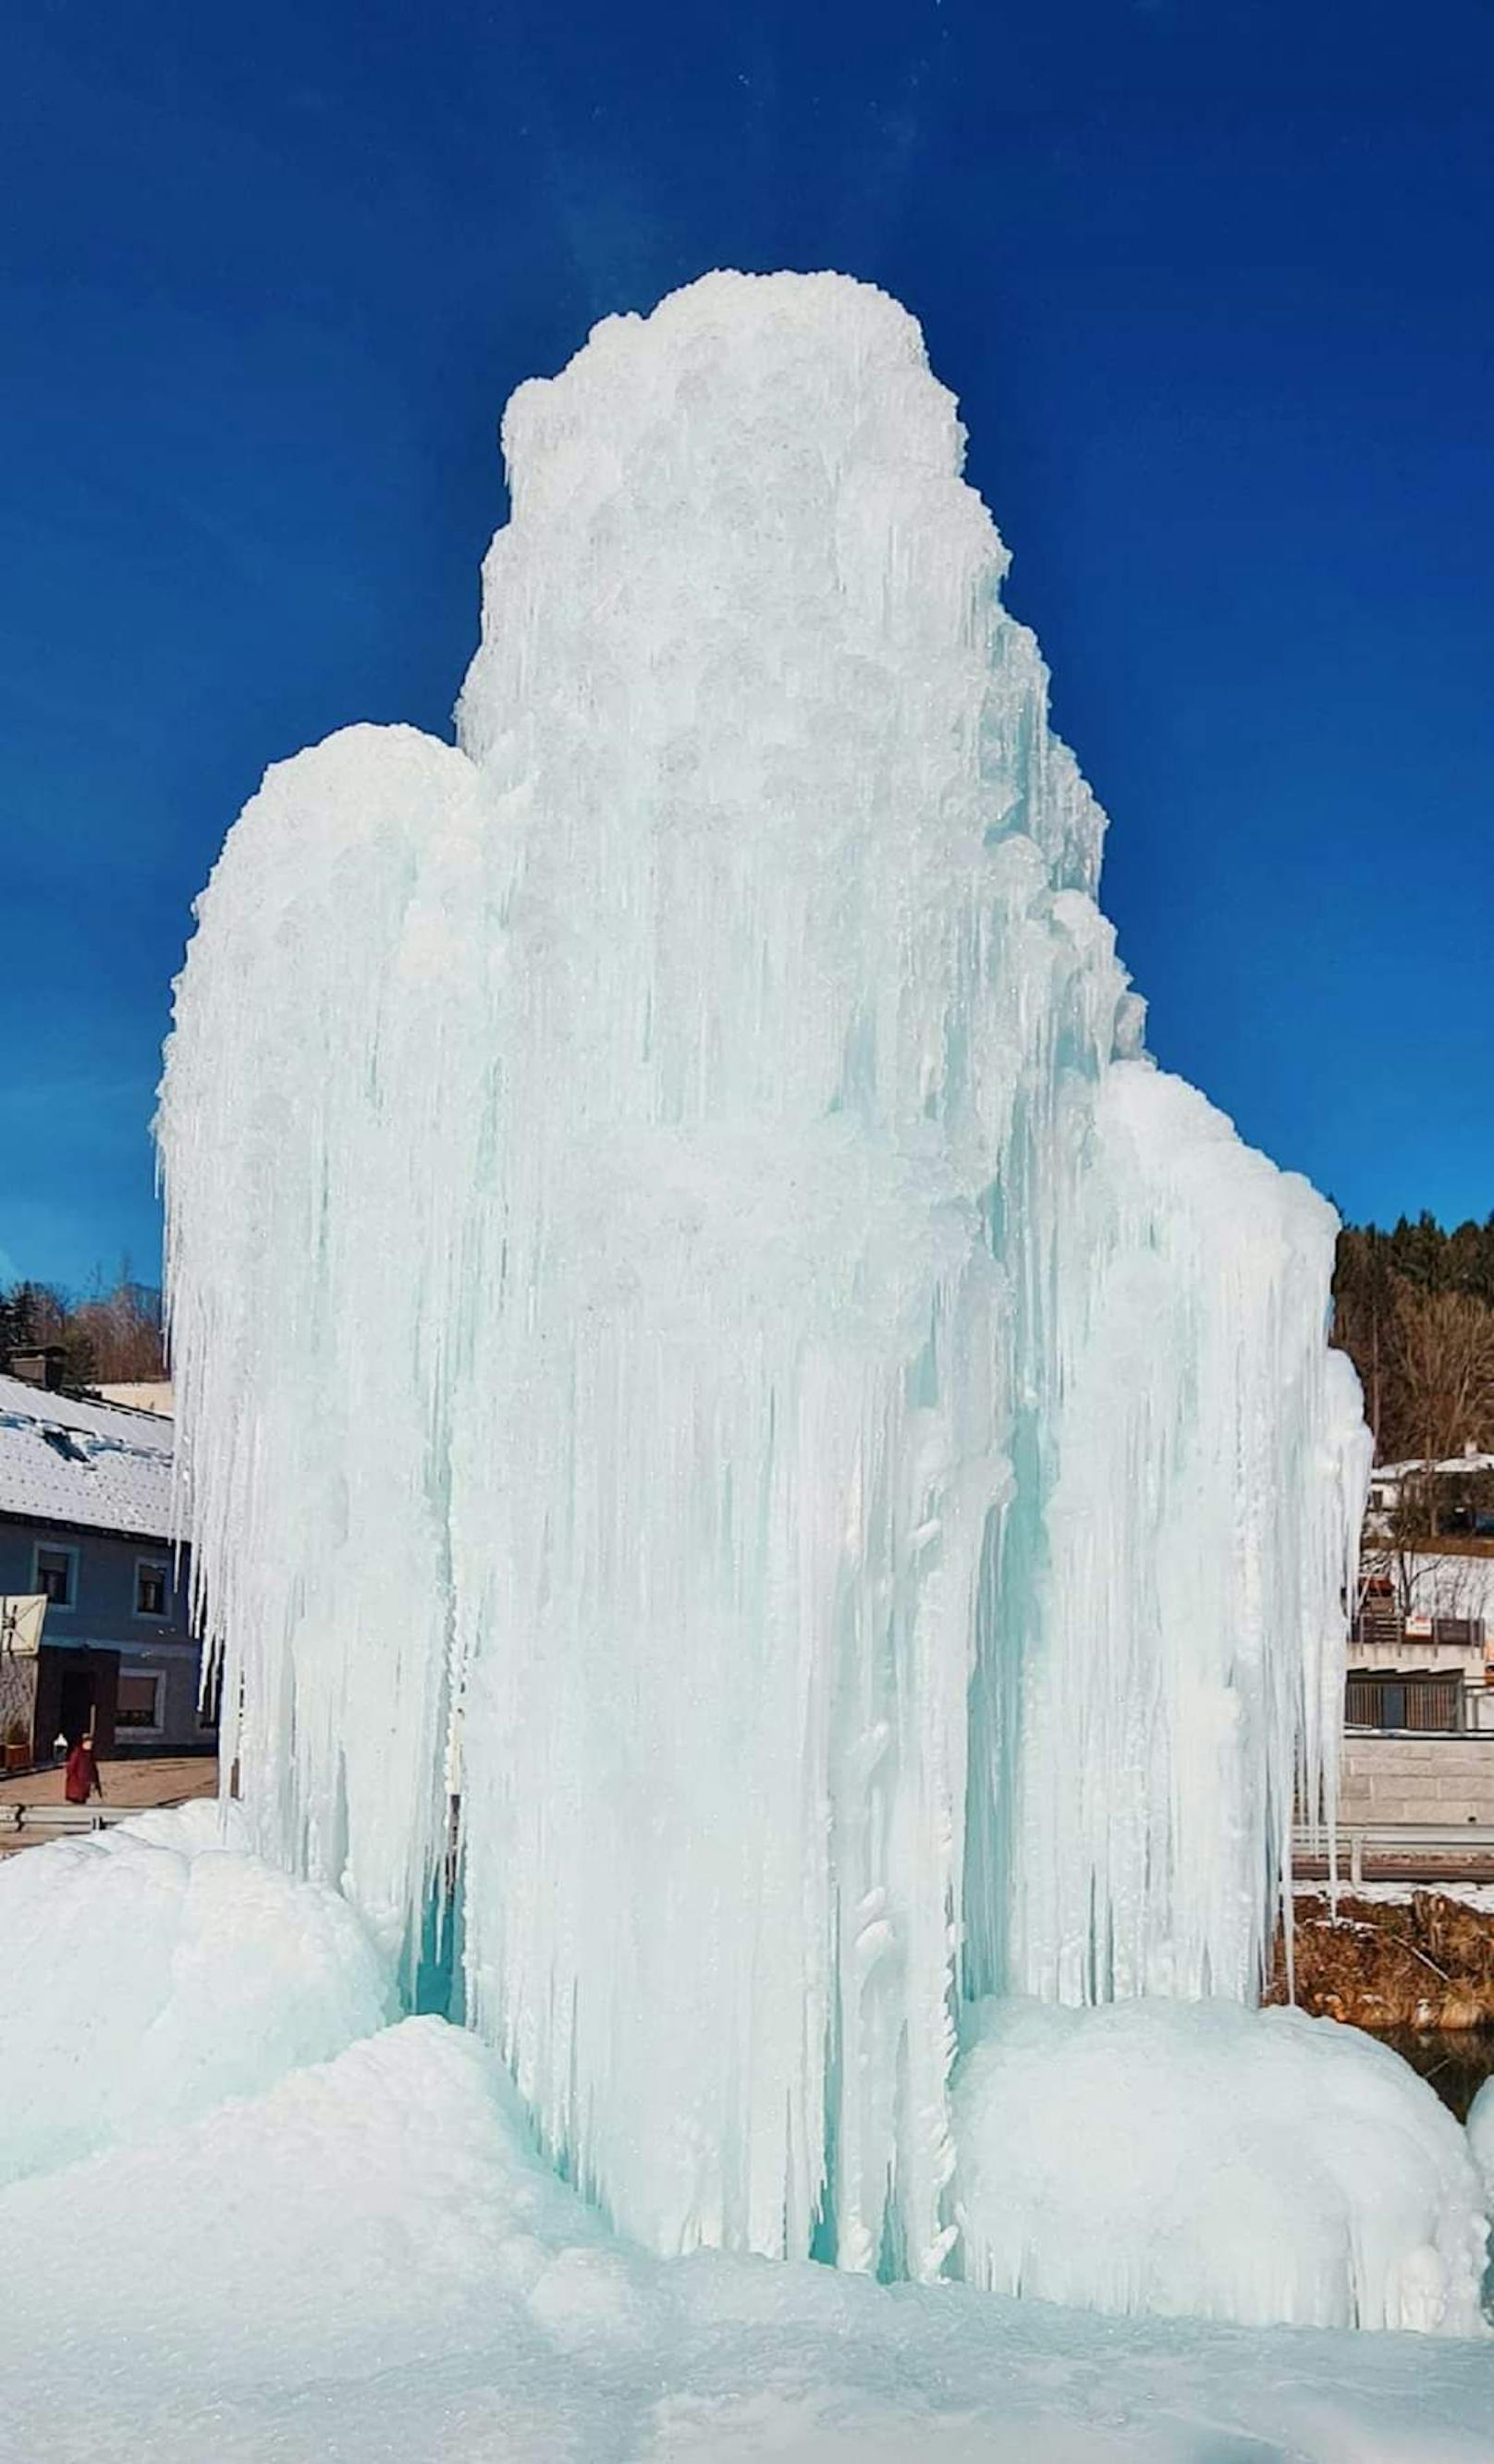 Durch die kalten Temperaturen gefror das Wasser zu einer riesigen Eissäule.